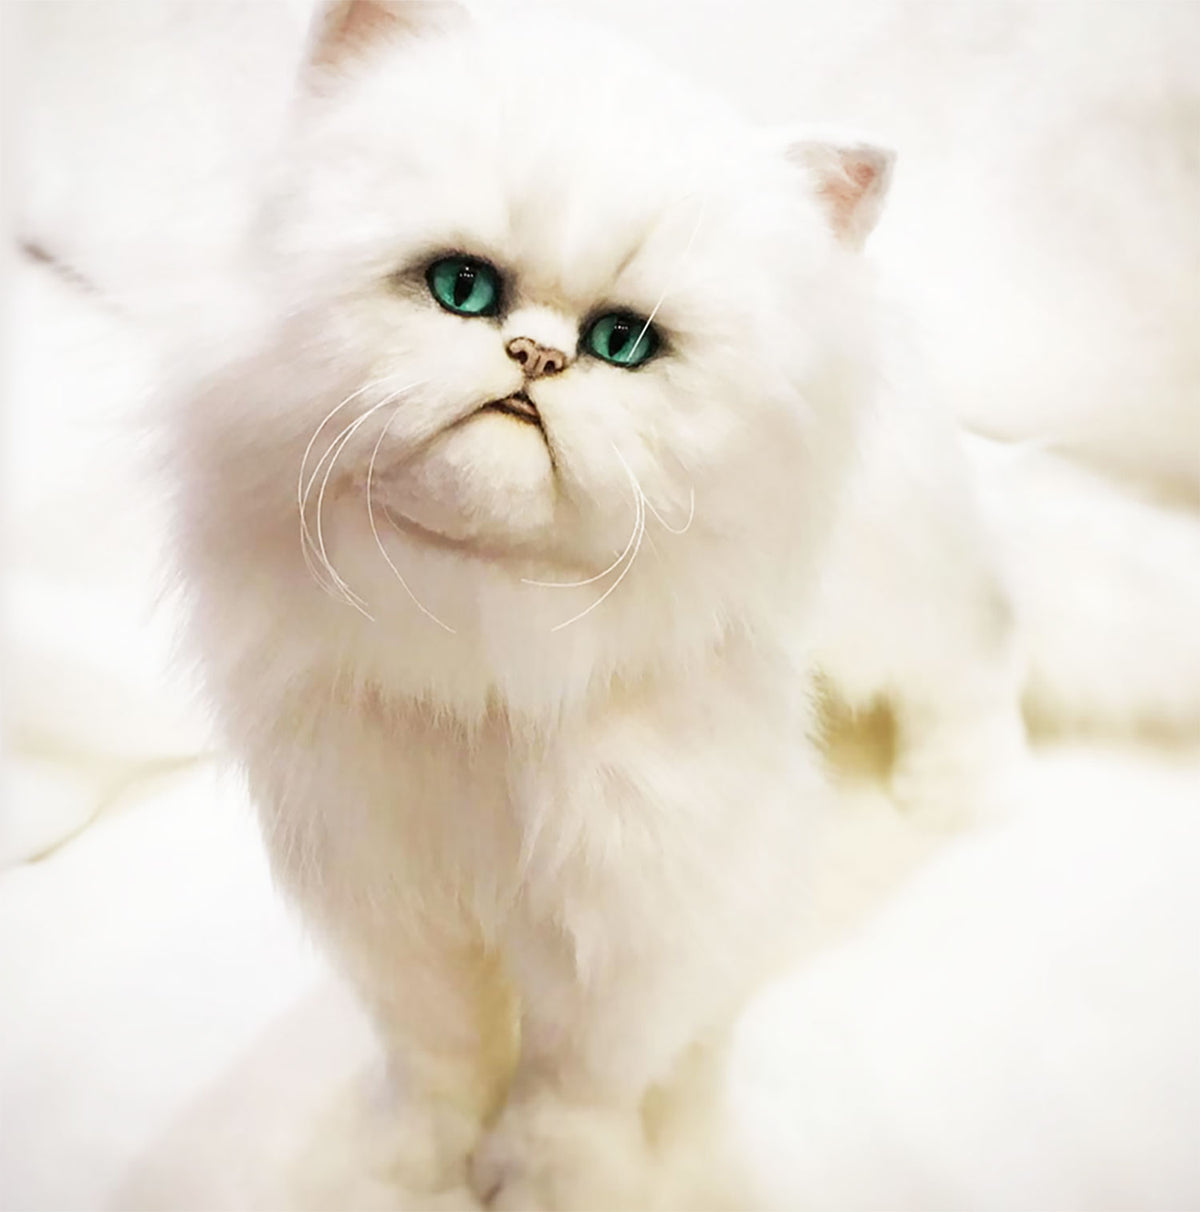 PLUSH Cat, Cat Stuffed Animal from Photos - Medium Persian Cat